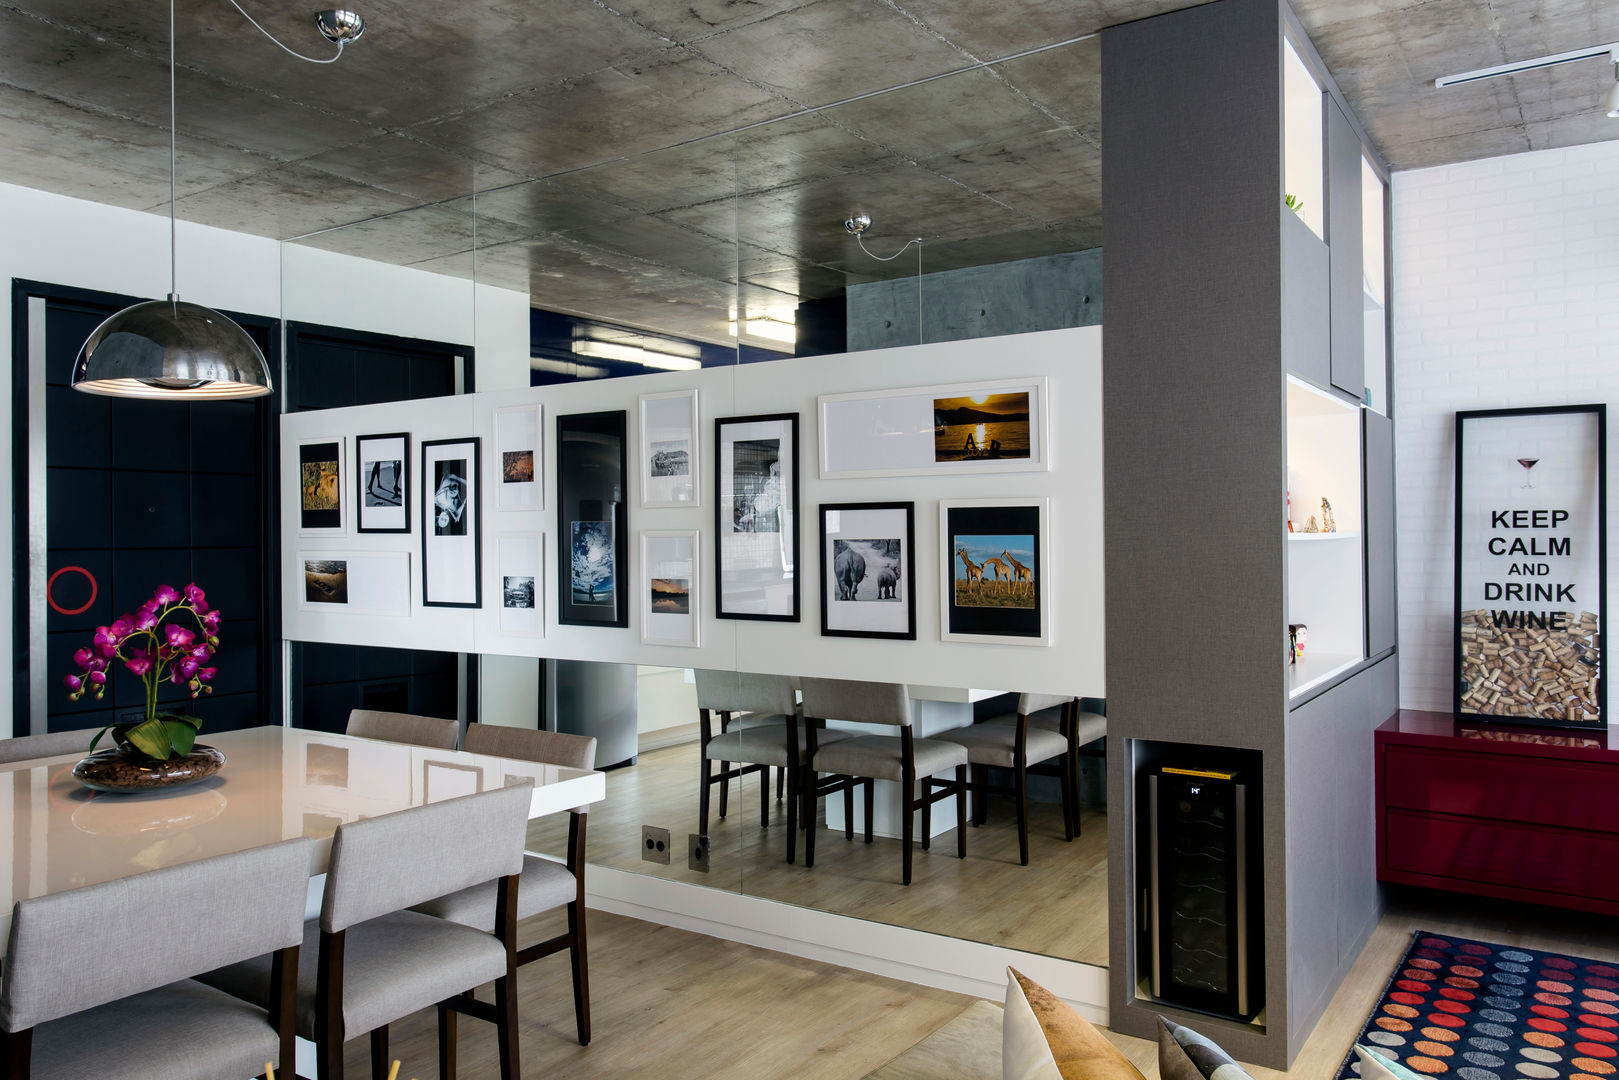 O corredor ganhou uma galeria de fotos Adriana Pierantoni Arquitetura & Design Corredores, halls e escadas modernos